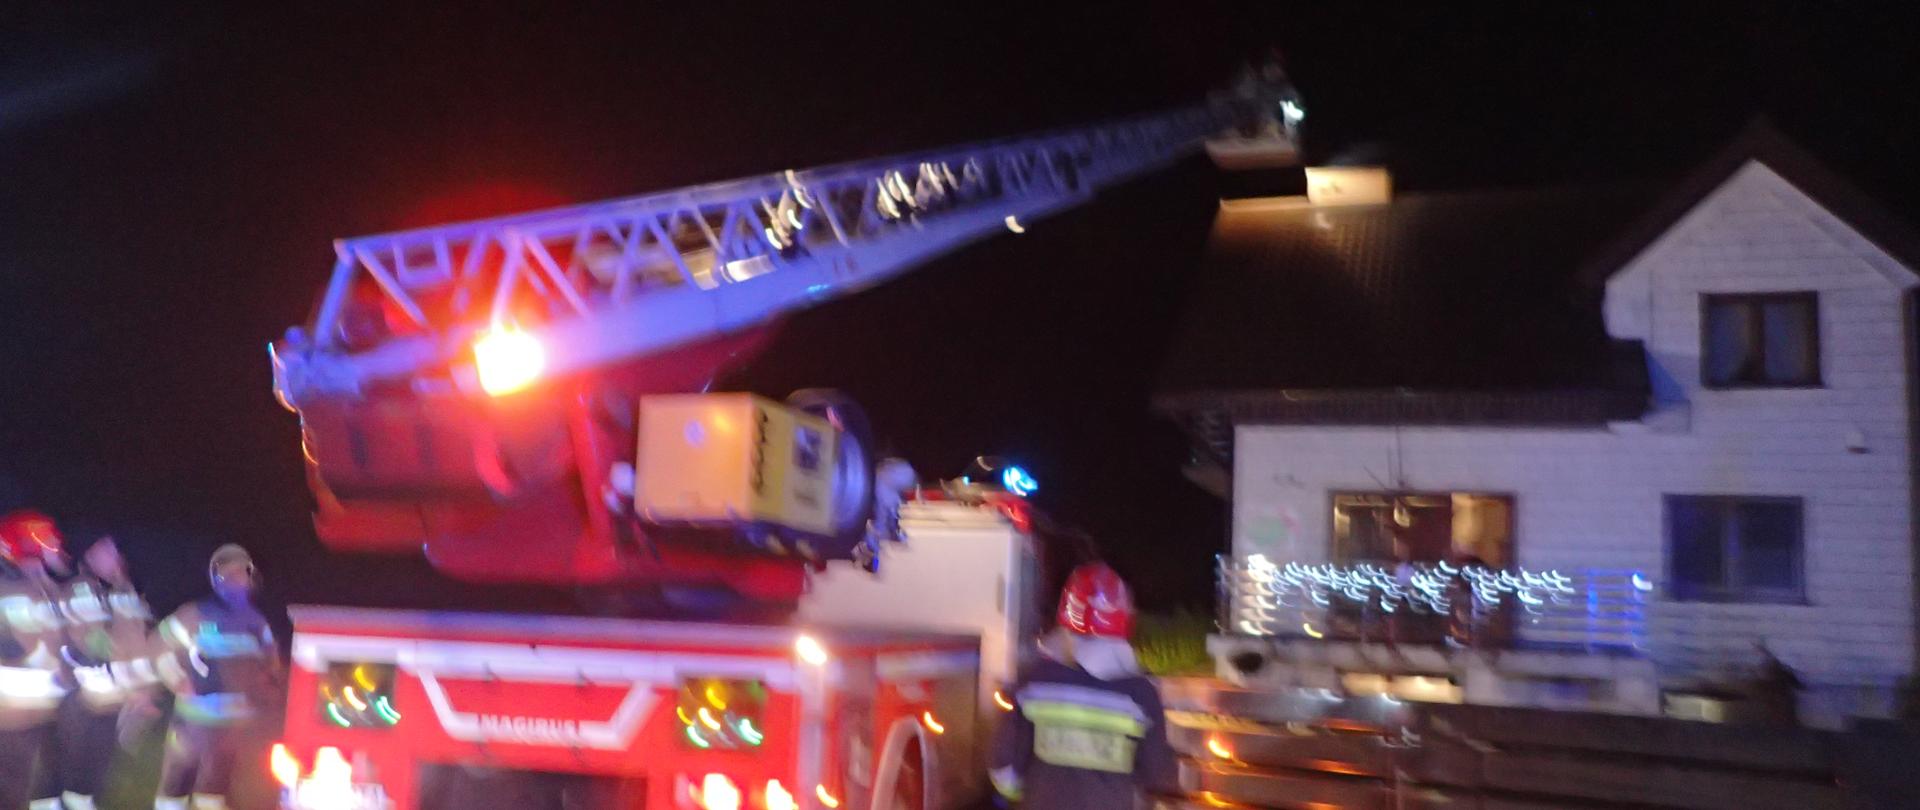 Mechaniczna drabina pożarnicza sprawiana do dachu budynku mieszkalnego przy niej stoją strażacy, pora nocna